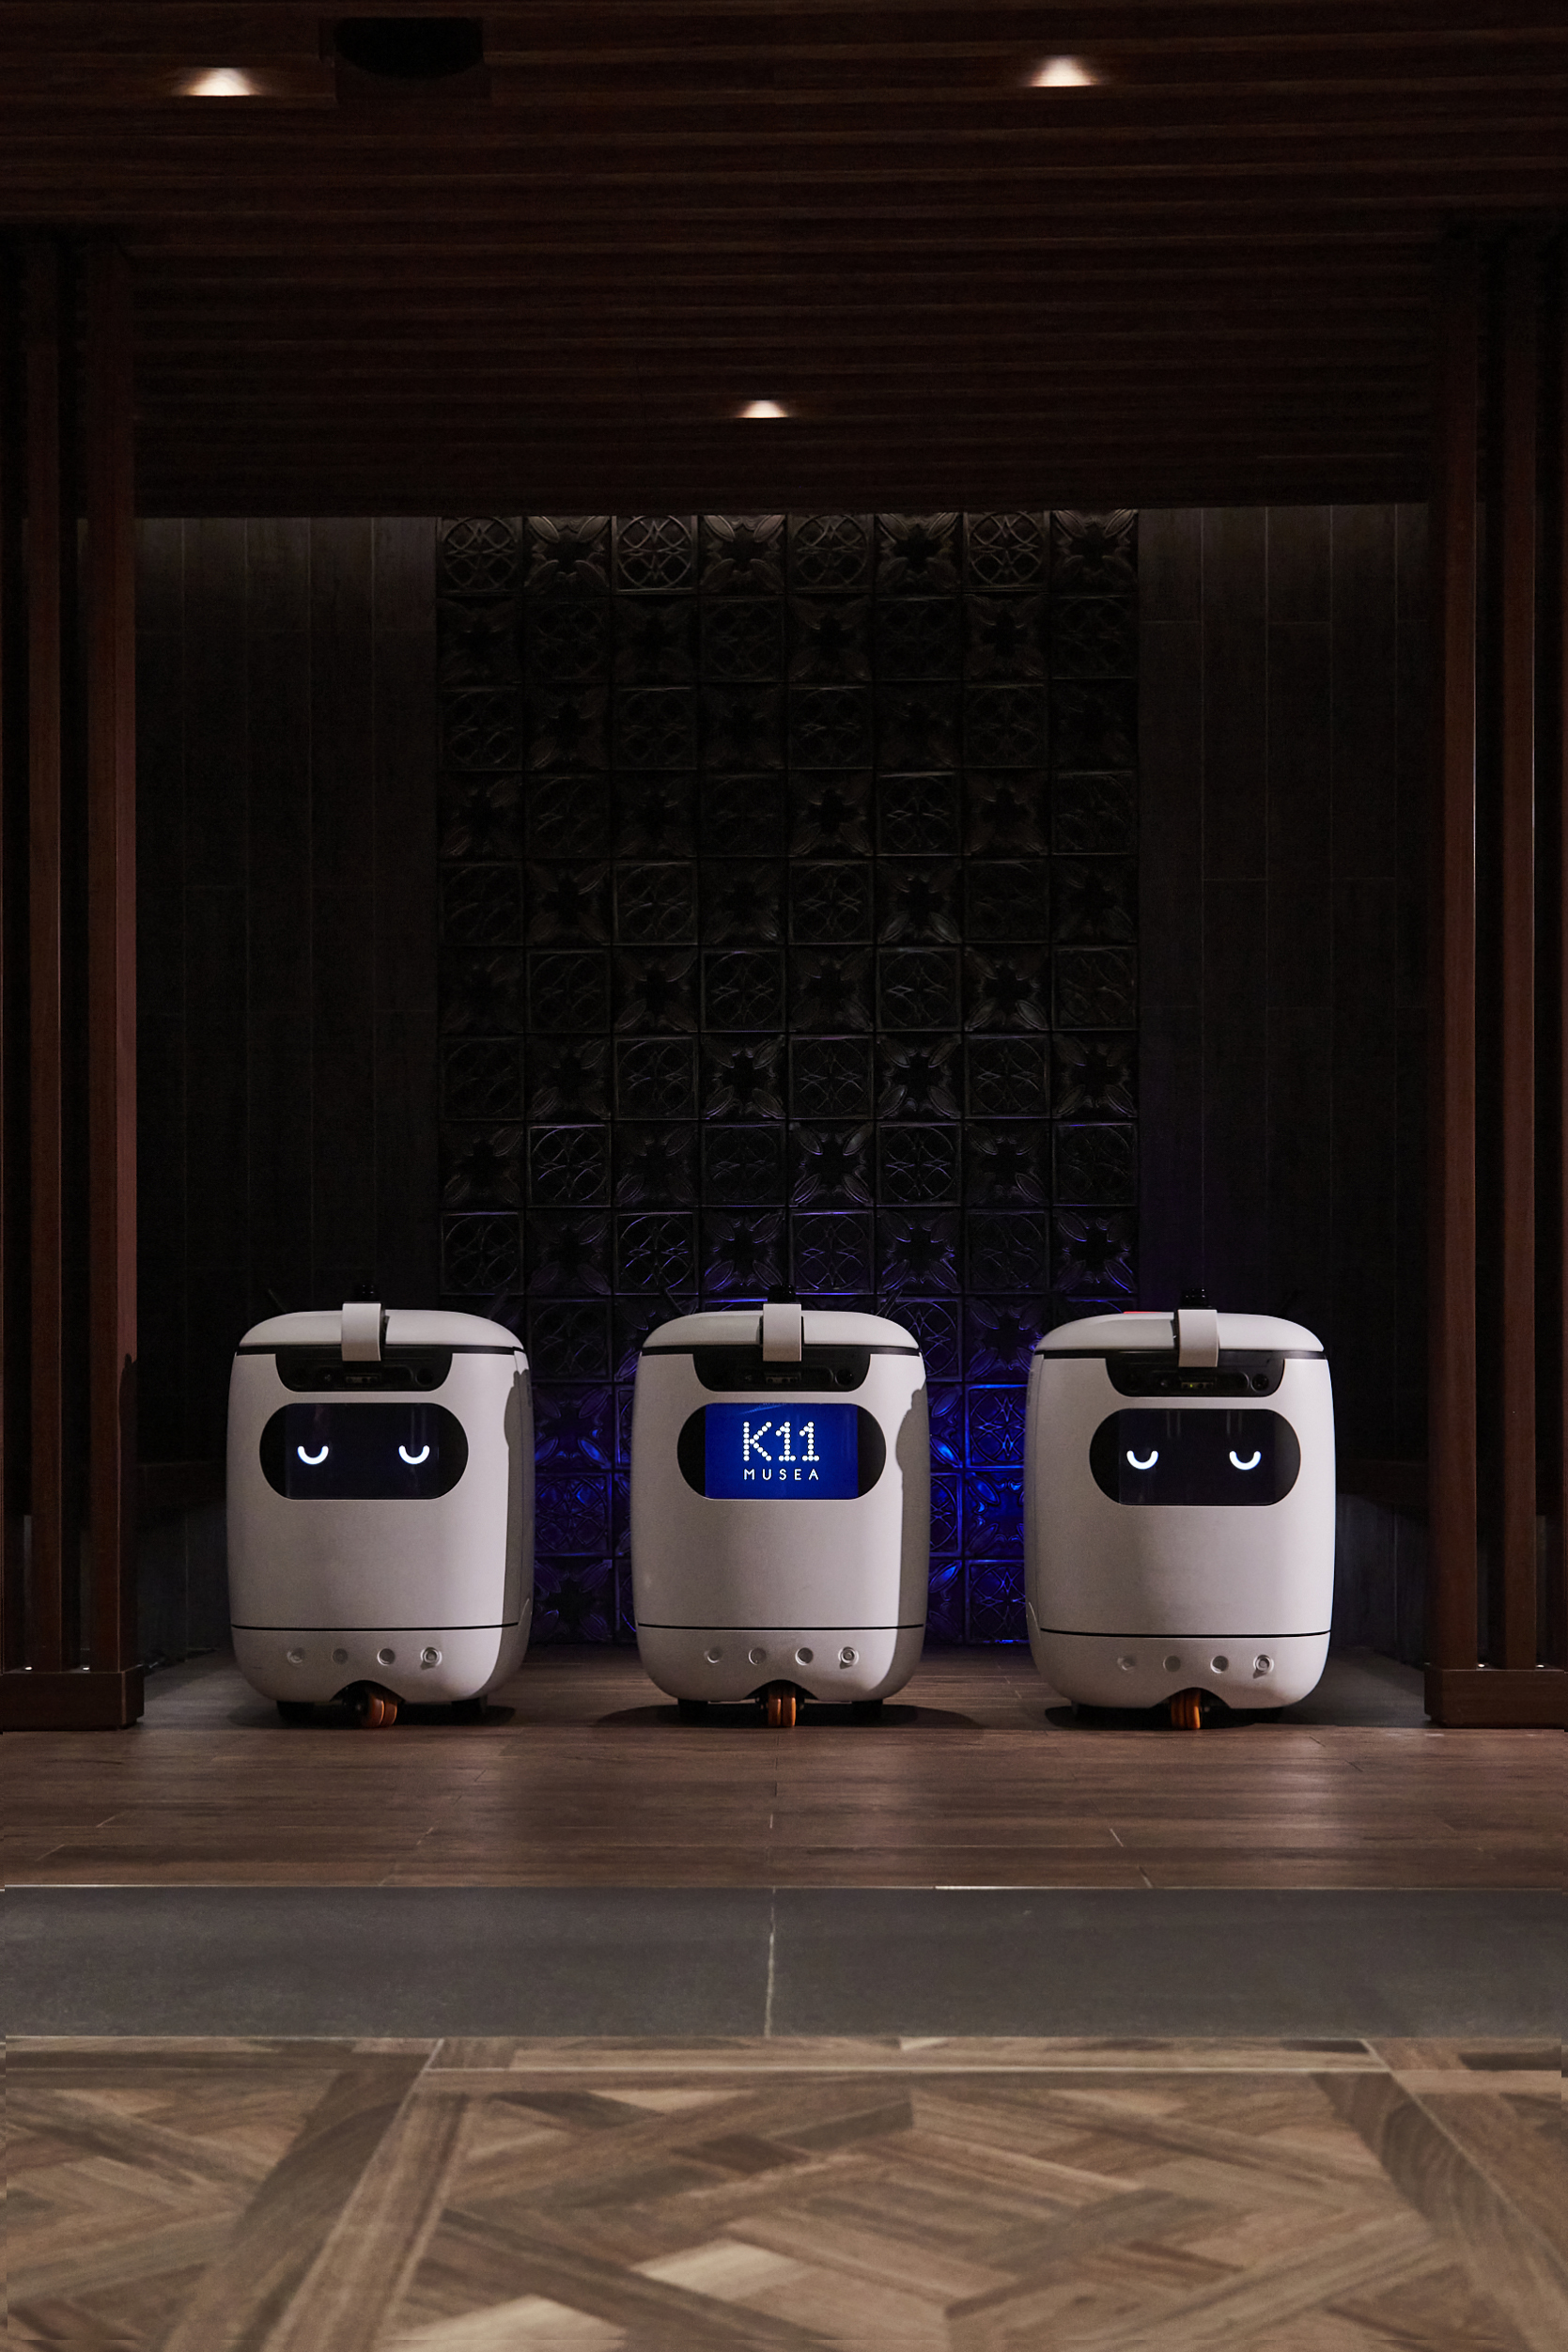 Vega Digital Awards Winner - K11 MUSEA’s Sanitisation Robots Waltz Through the Pandemic, K11 Hong Kong